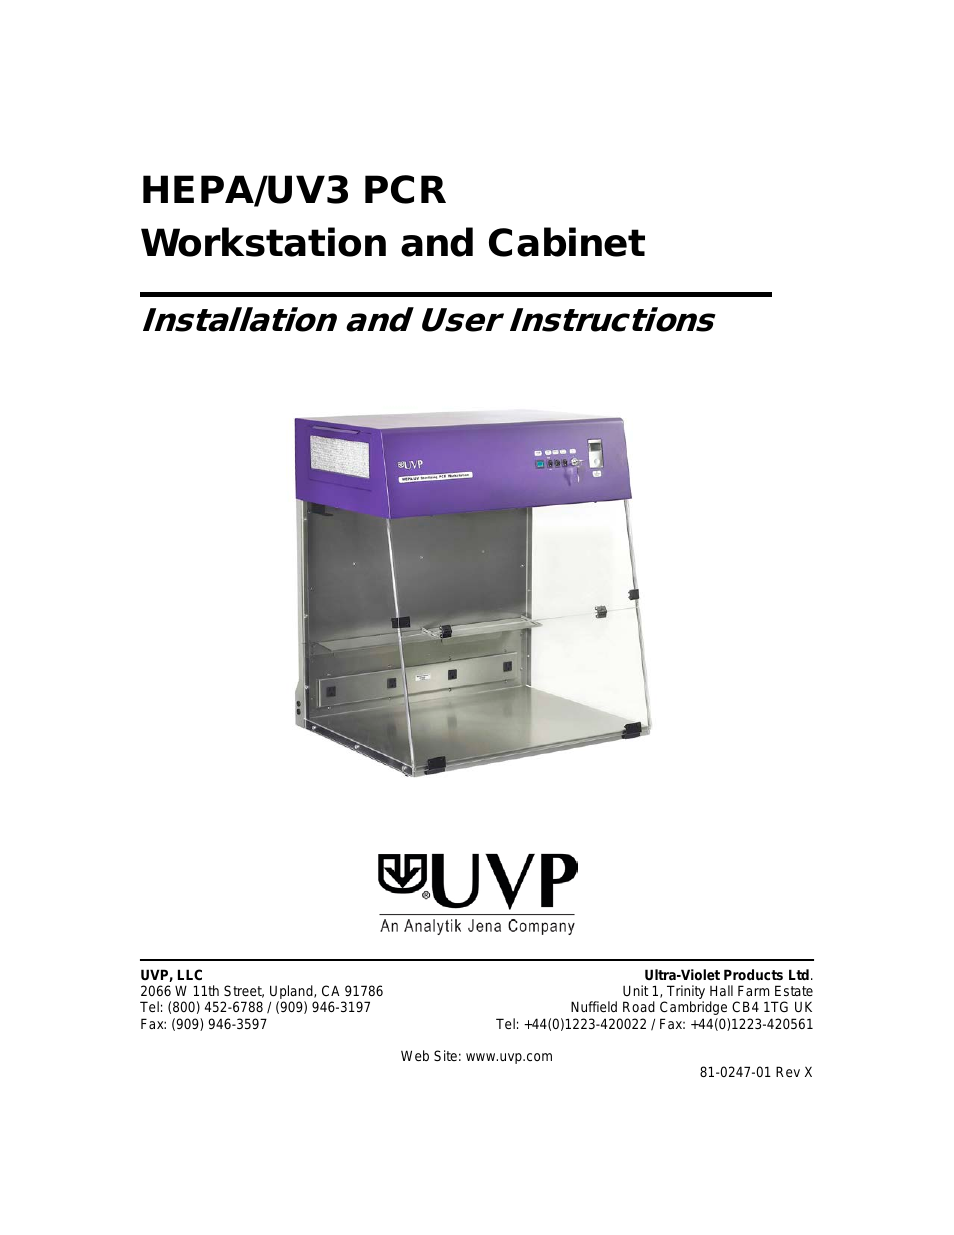 HEPA/UV PCR Systems